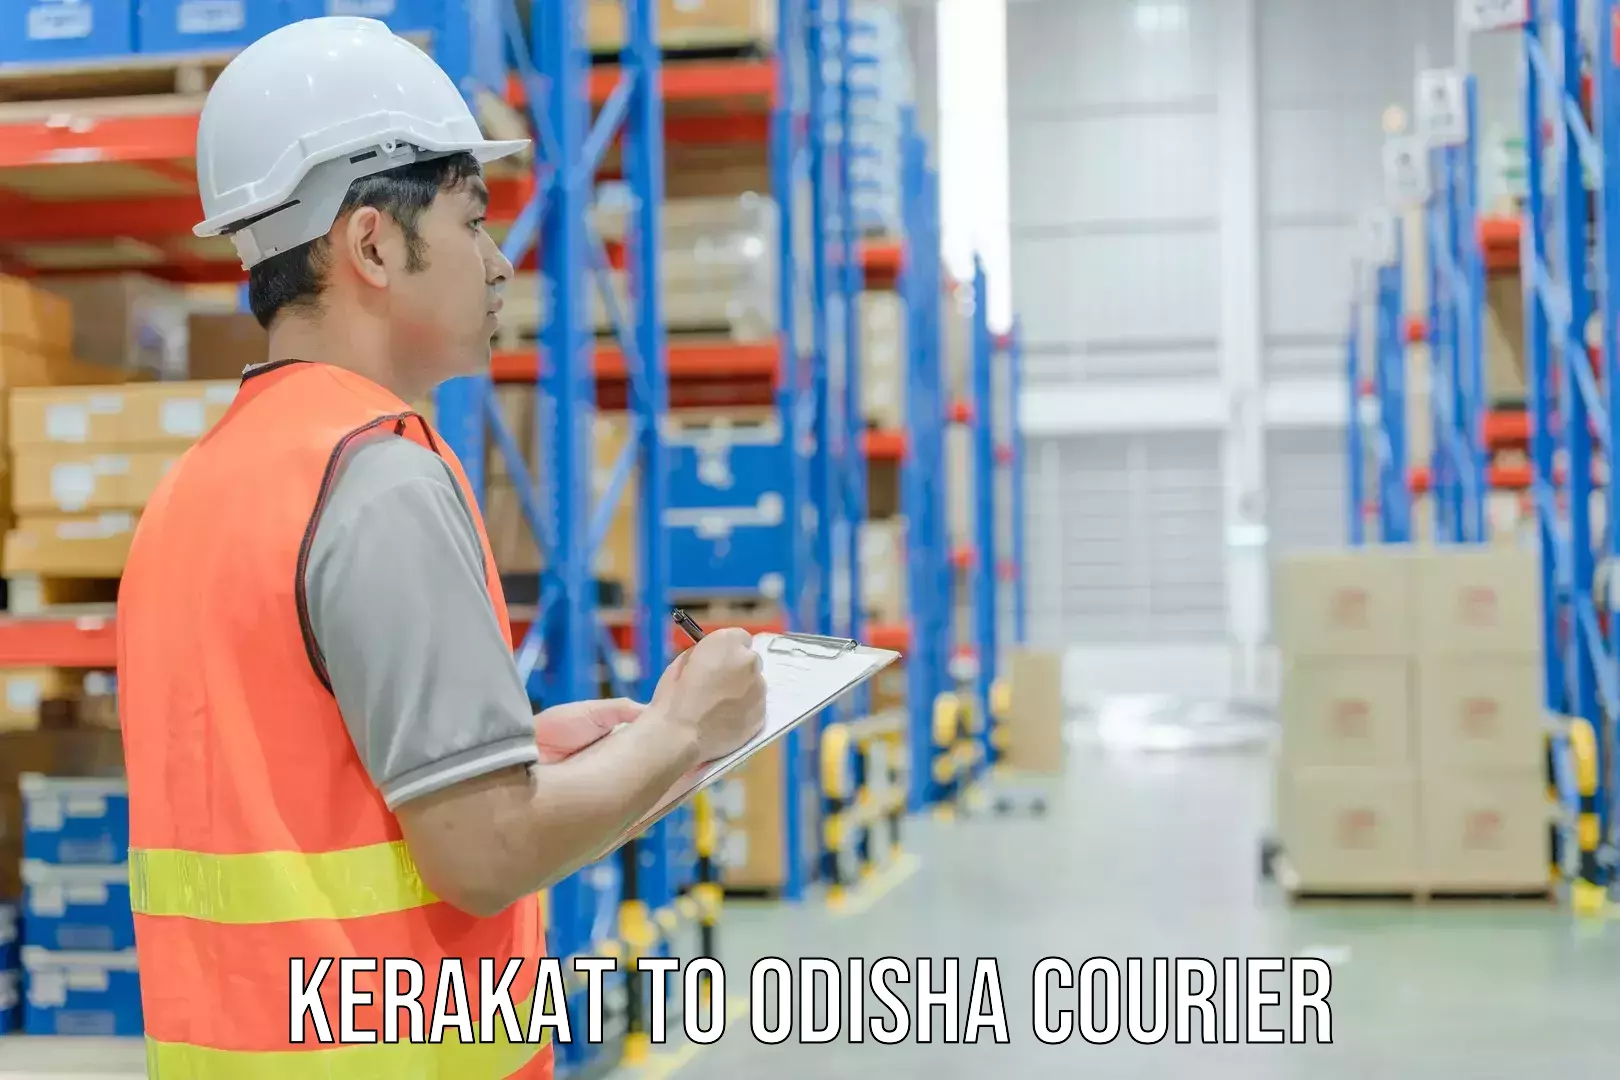 Sustainable shipping practices Kerakat to Odisha